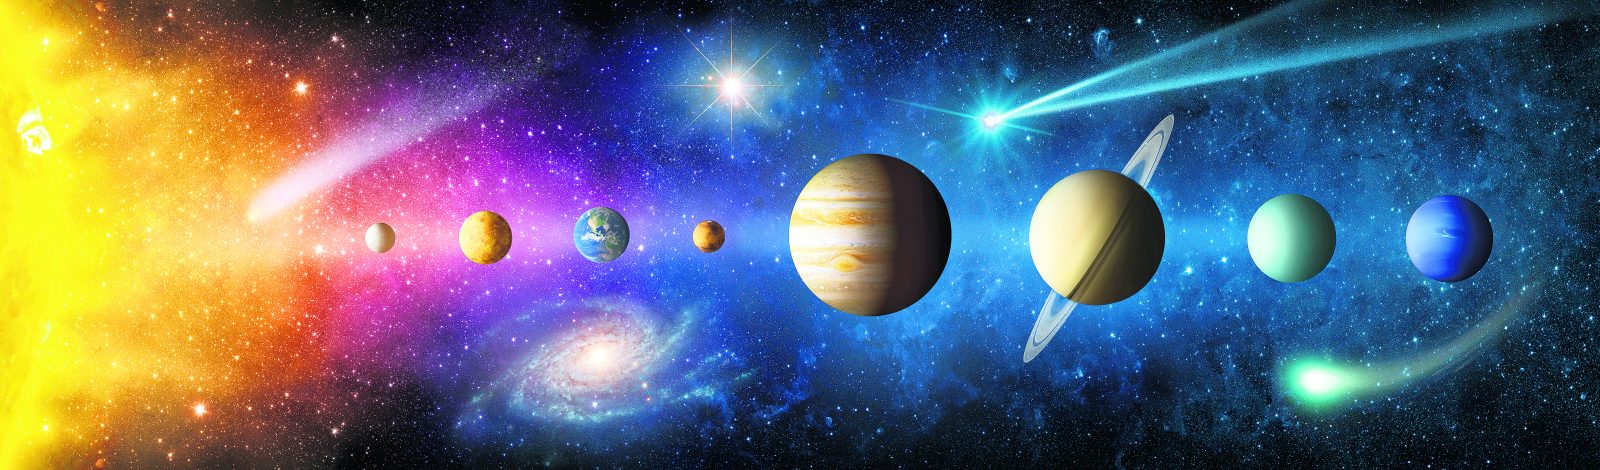 Güneş Sistemi oluşurken çok daha fazla gezegen vardı. Bir kısmı birleşti, bir kısmı sistemin dışına fırladı, bazıları Güneş’e çakılarak yok oldu.